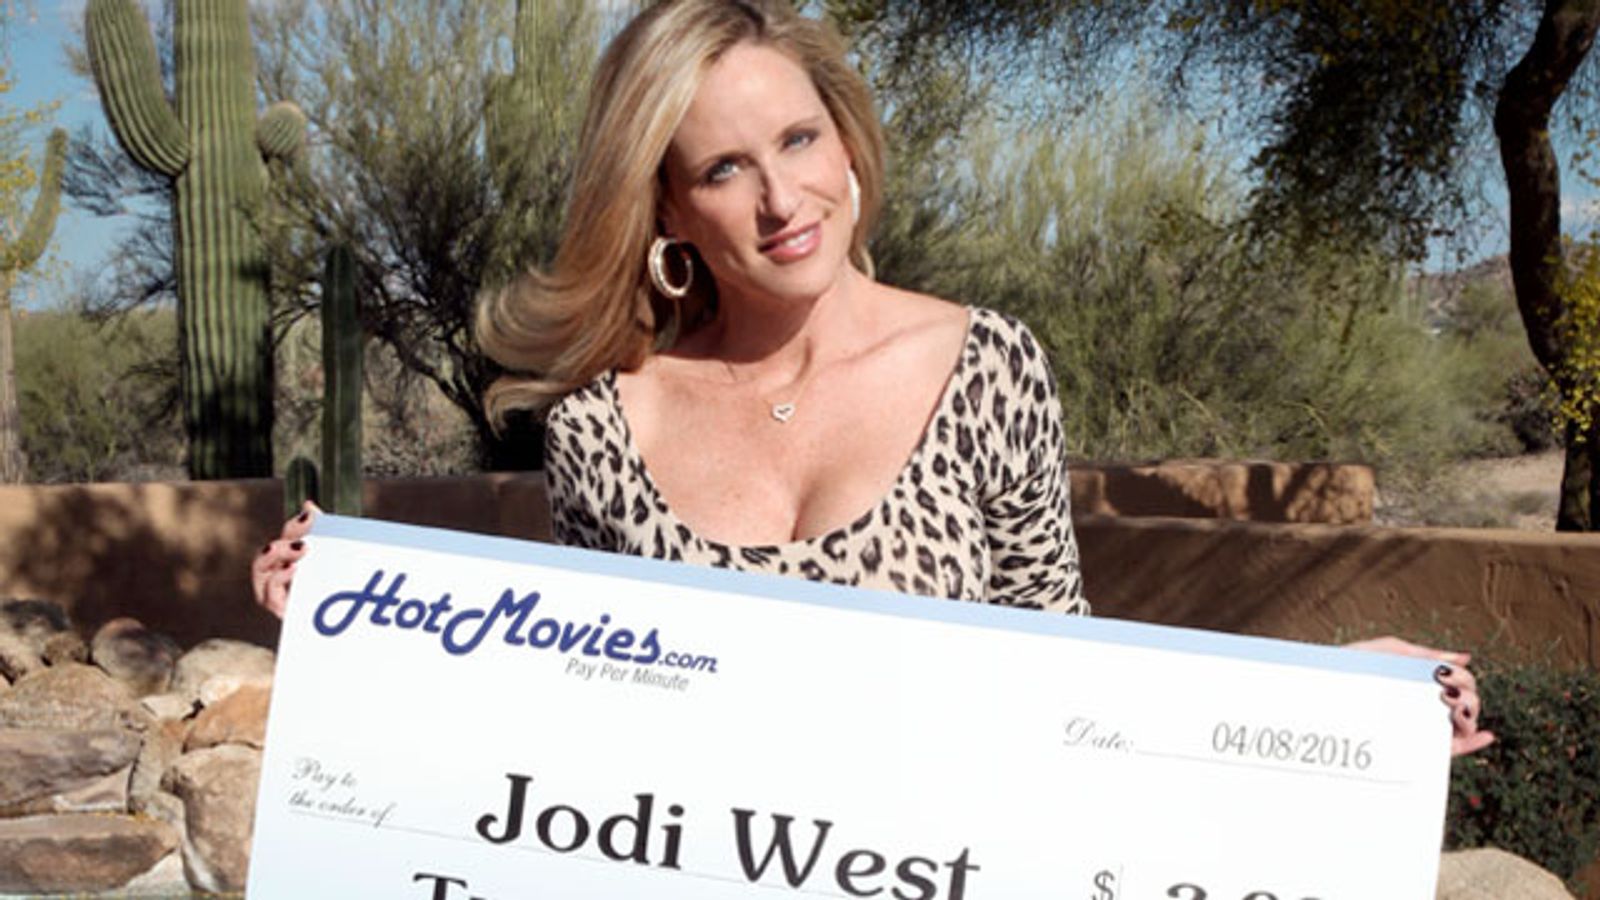 Jodi West Wins HotMovies.com 2016 Porn Star Tournament